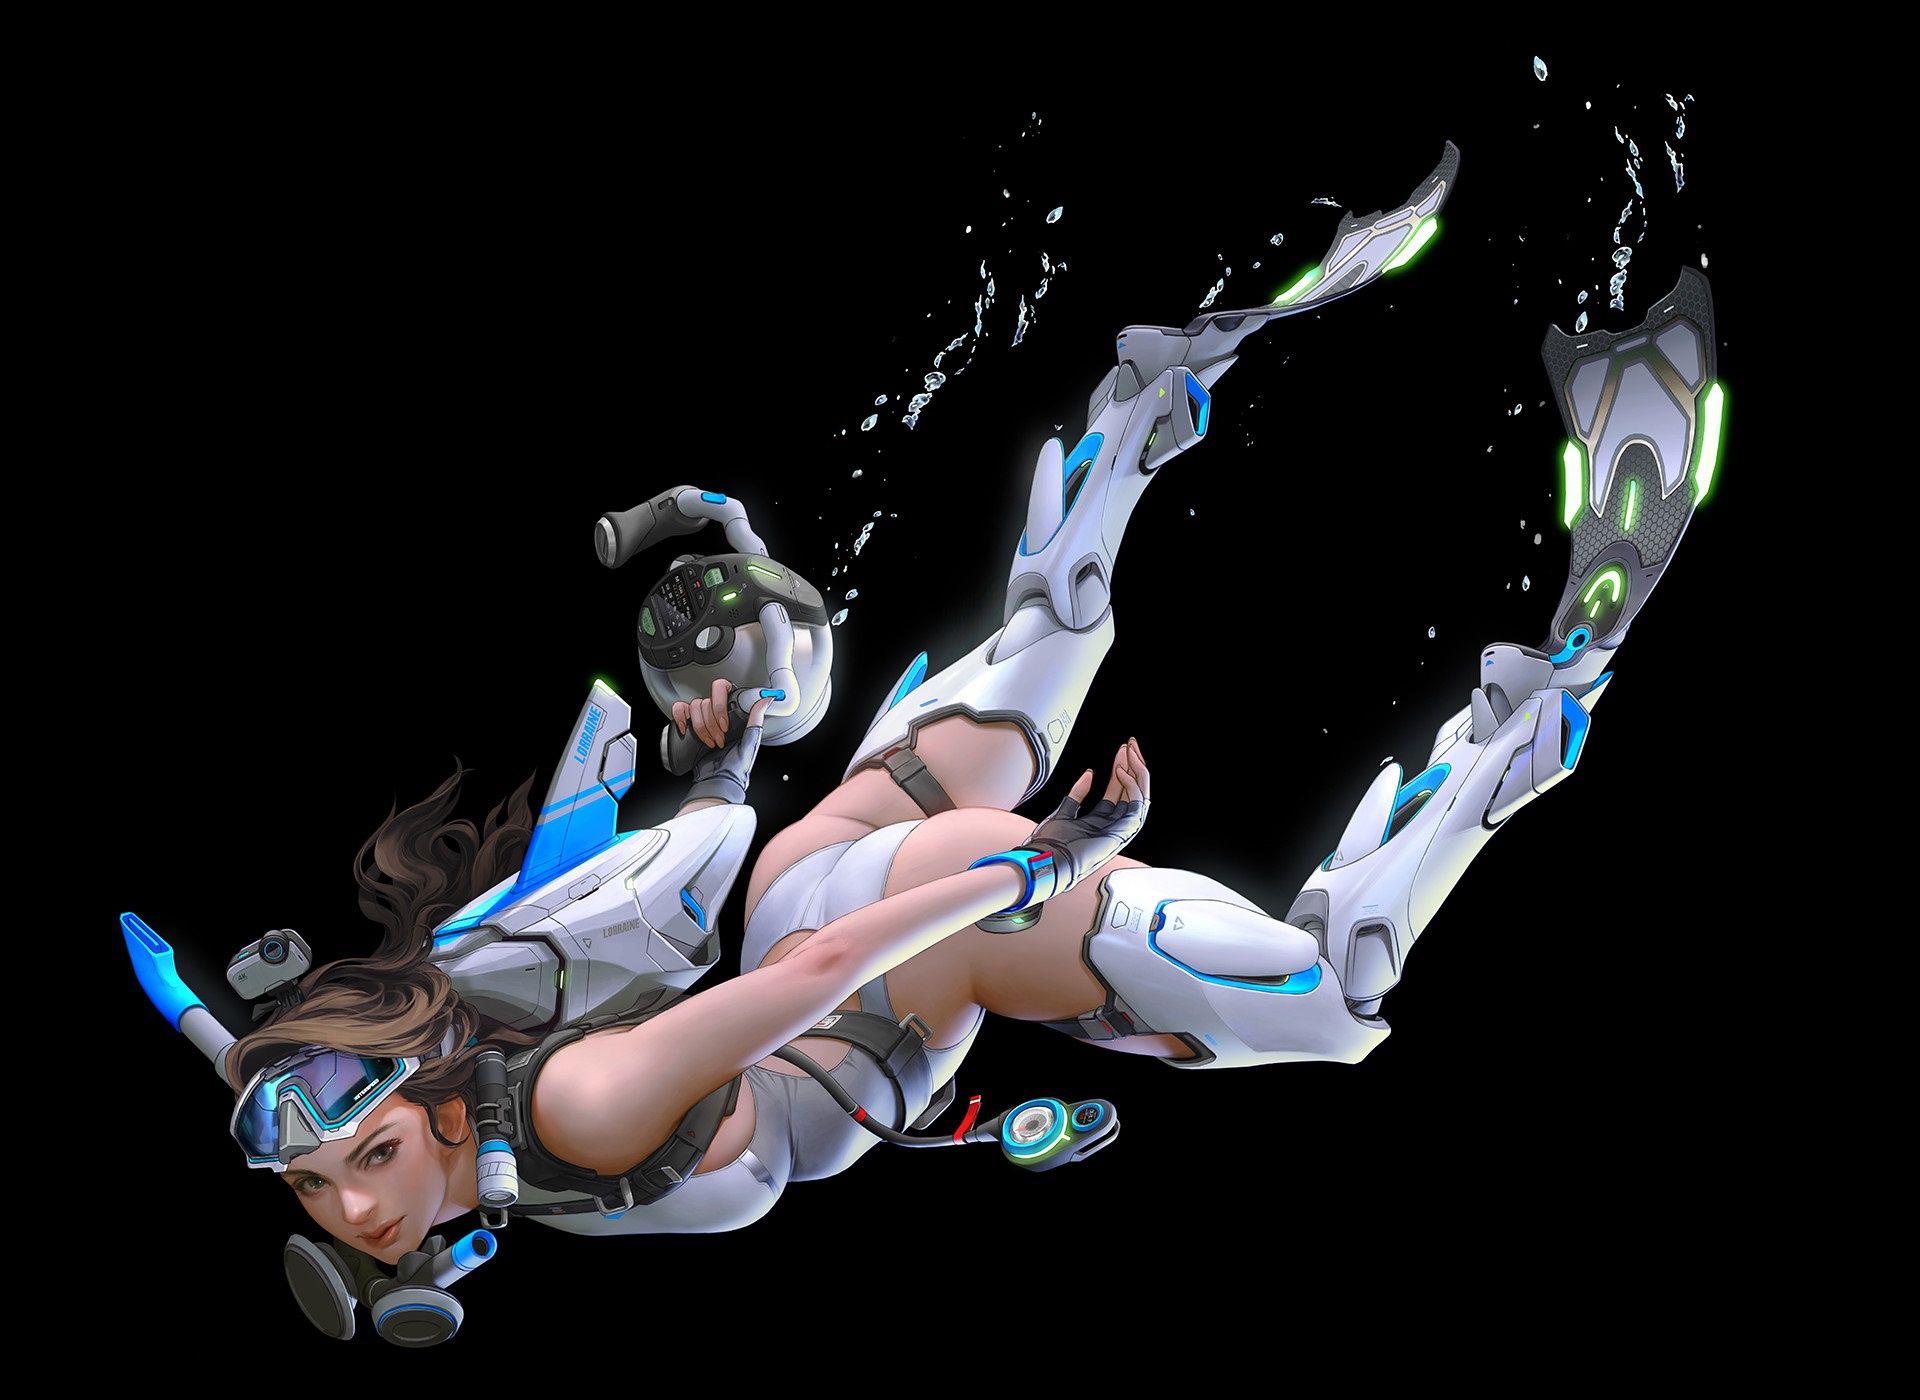 General 1920x1400 science fiction women artwork scuba diving futuristic diving suits simple background digital art